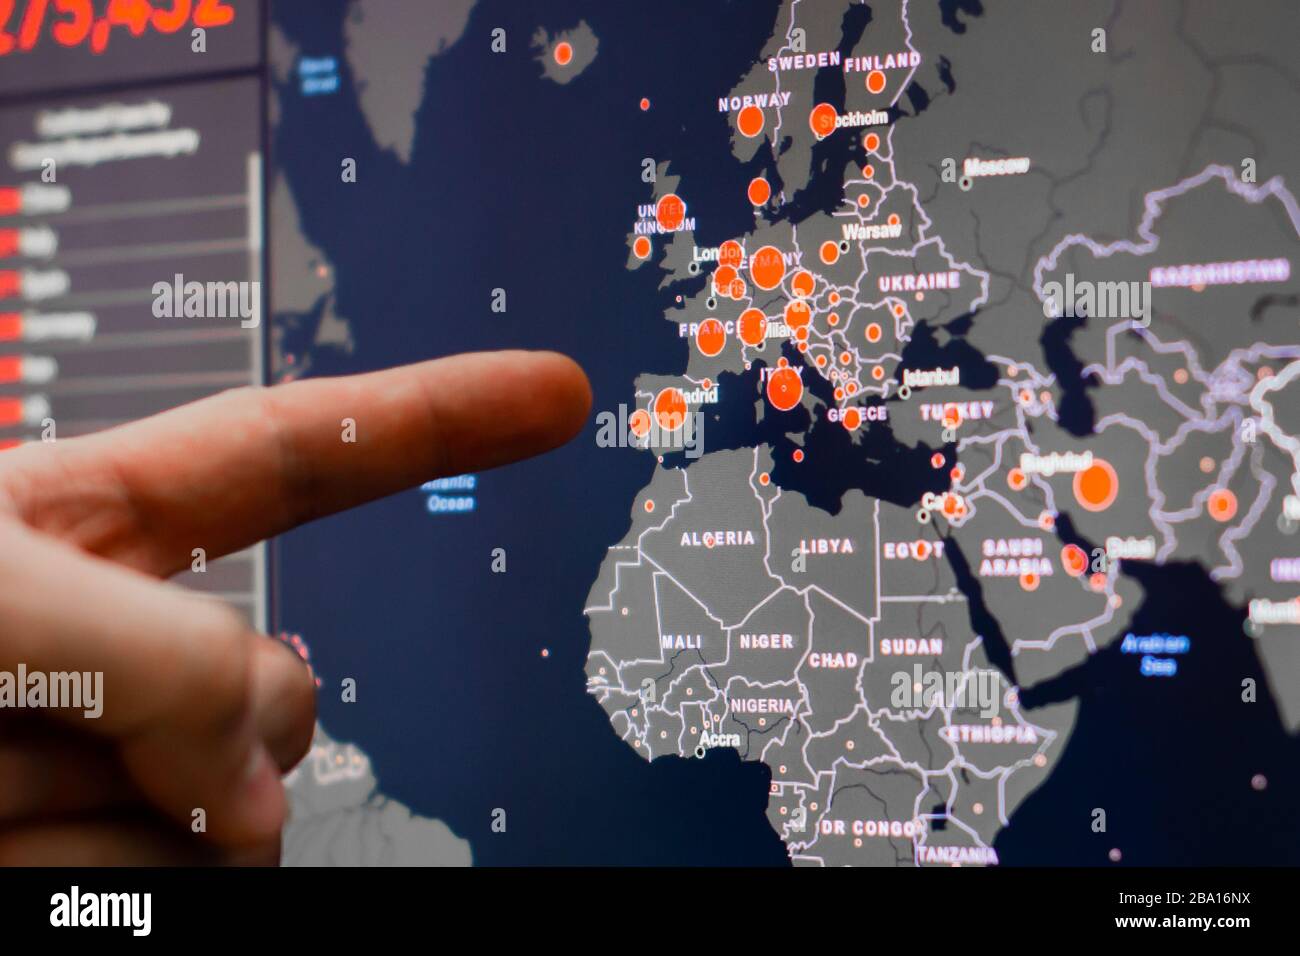 Un homme montre sur un écran avec la carte européenne de Coronavirus, SARS-Cov-2. Cas confirmés de coronavirus dans le monde. Rapport dans le monde entier Banque D'Images